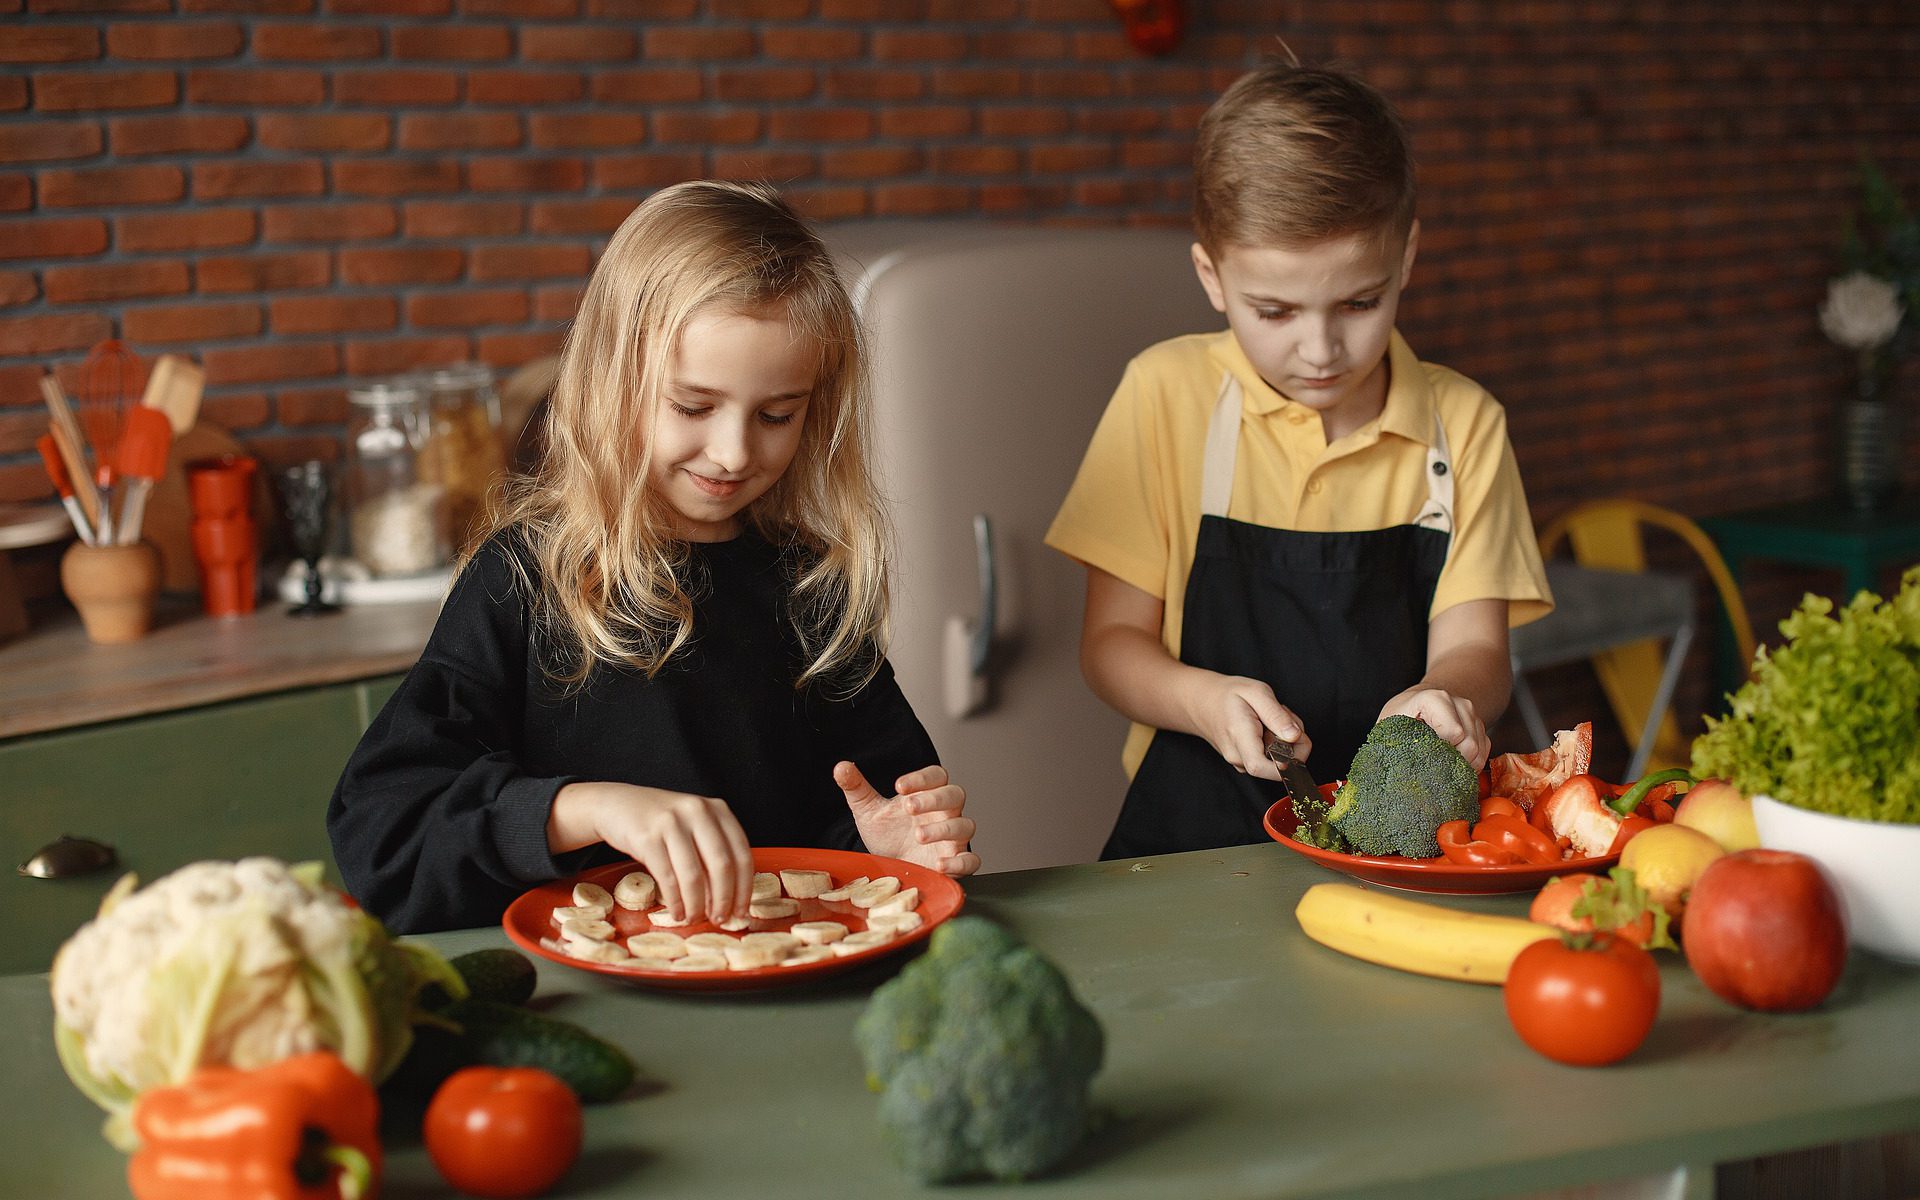 לבשל עם הילדים כך תהפכו יום בישול לחוויה - עידן בן אור .